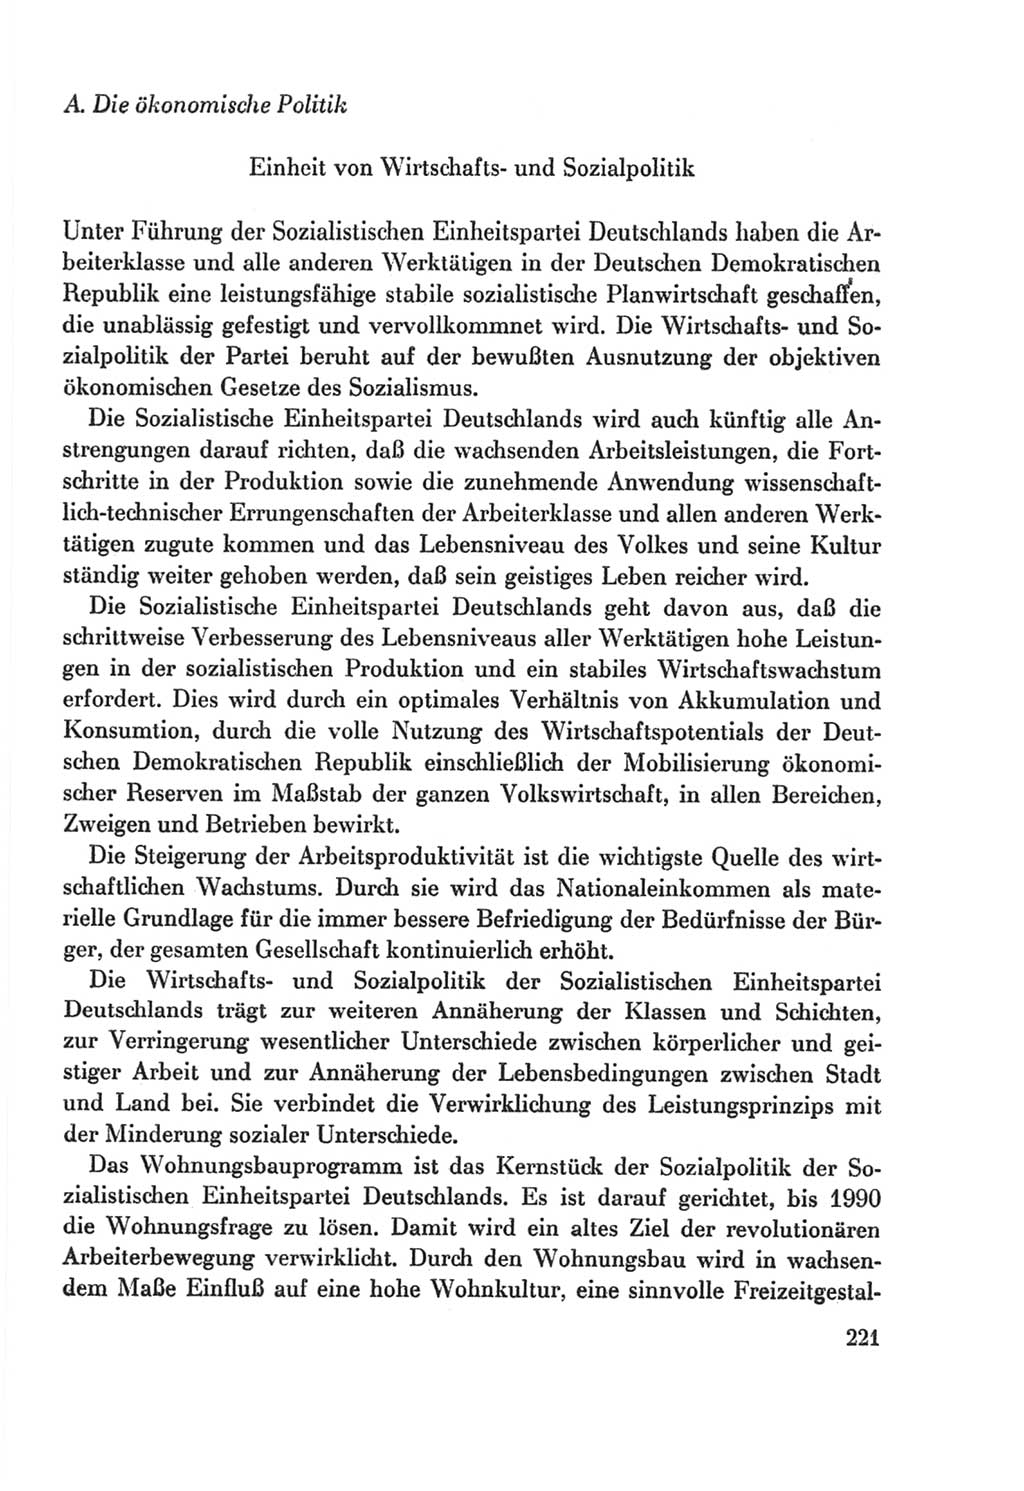 Protokoll der Verhandlungen des Ⅸ. Parteitages der Sozialistischen Einheitspartei Deutschlands (SED) [Deutsche Demokratische Republik (DDR)] 1976, Band 2, Seite 221 (Prot. Verh. Ⅸ. PT SED DDR 1976, Bd. 2, S. 221)